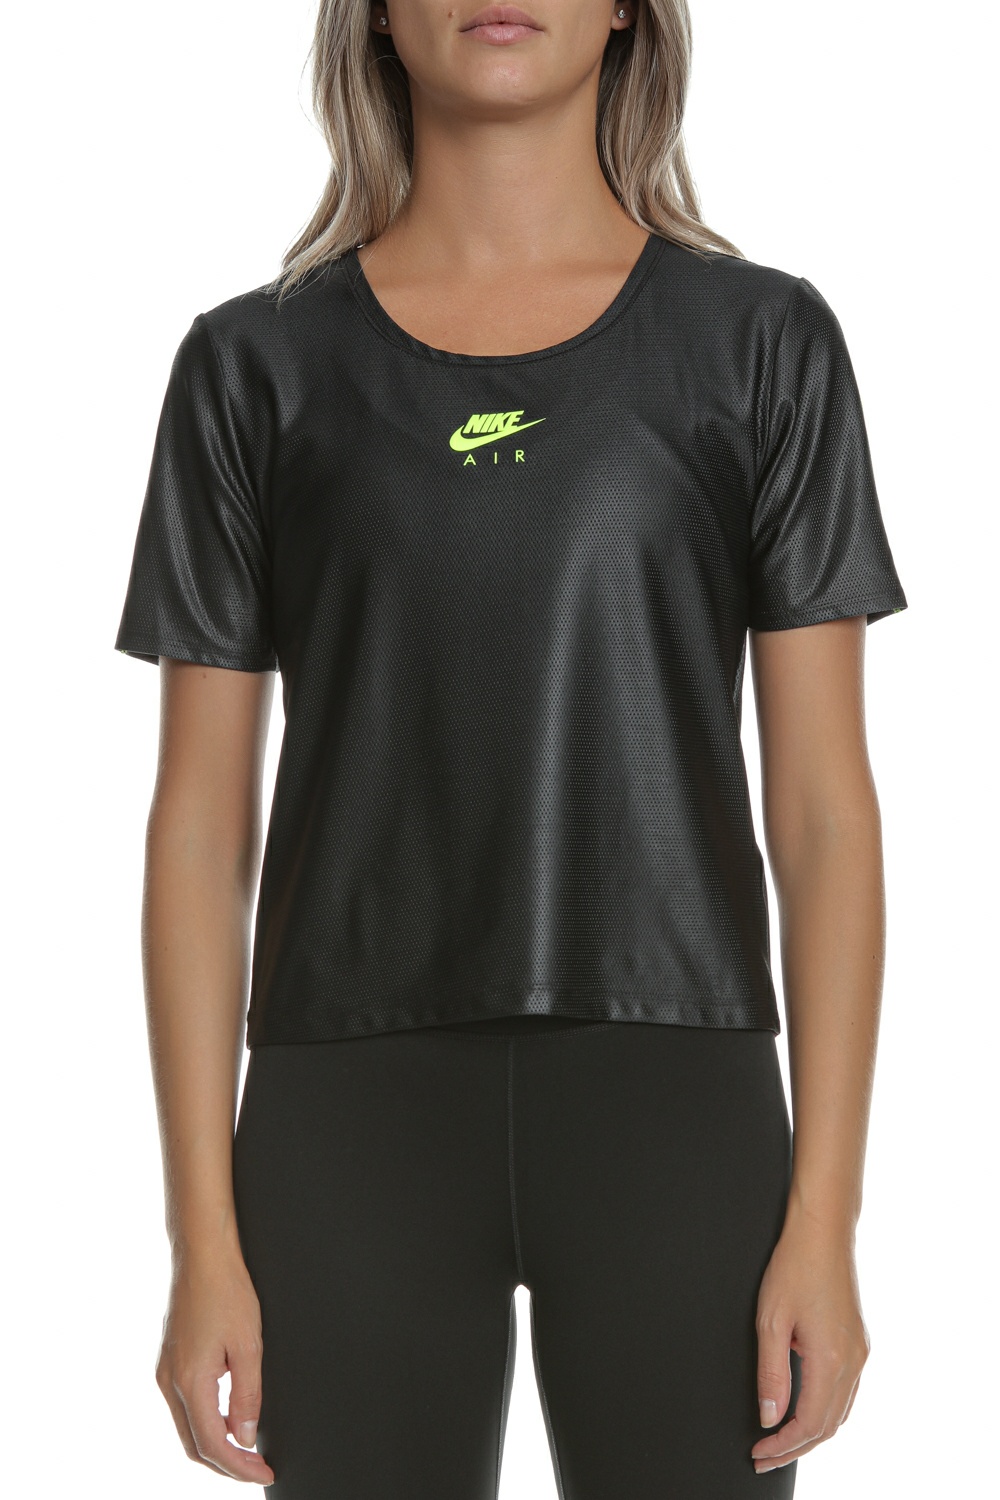 Γυναικεία/Ρούχα/Αθλητικά/T-shirt-Τοπ NIKE - Γυναικείο αθλητικό τοπ NIKE AIR SS μαύρο